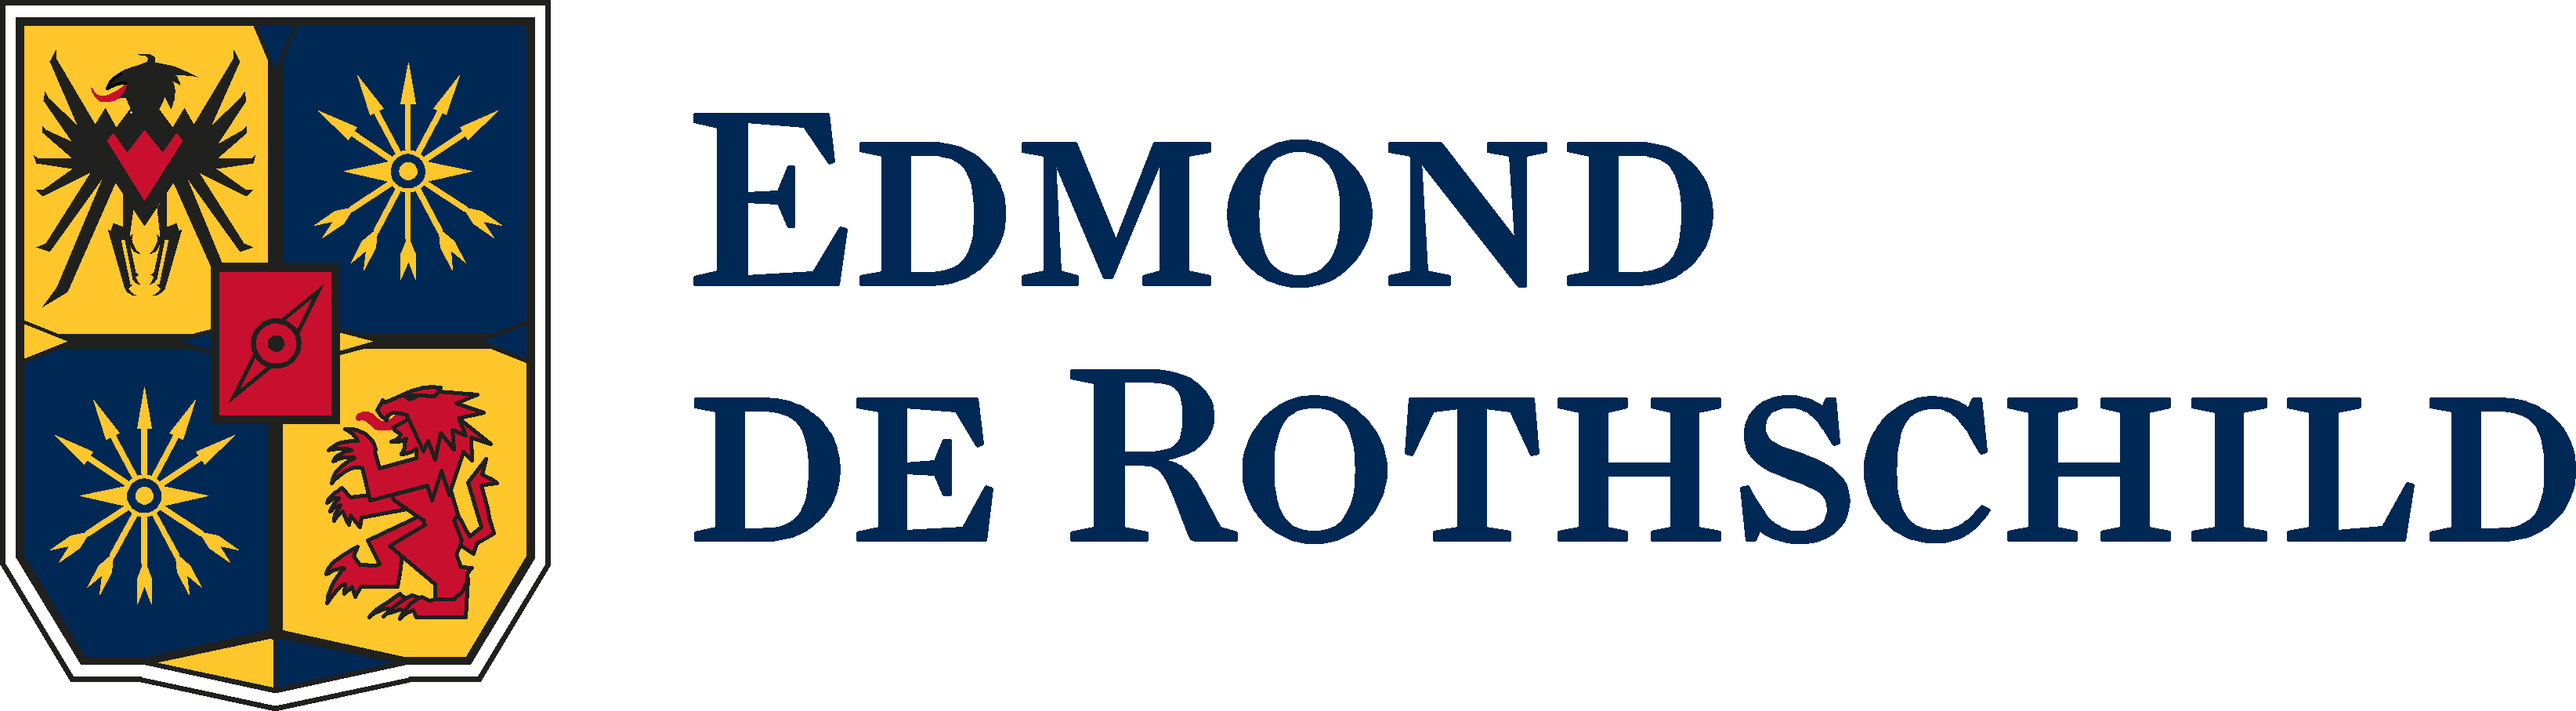 Edmond de Rothschild AM